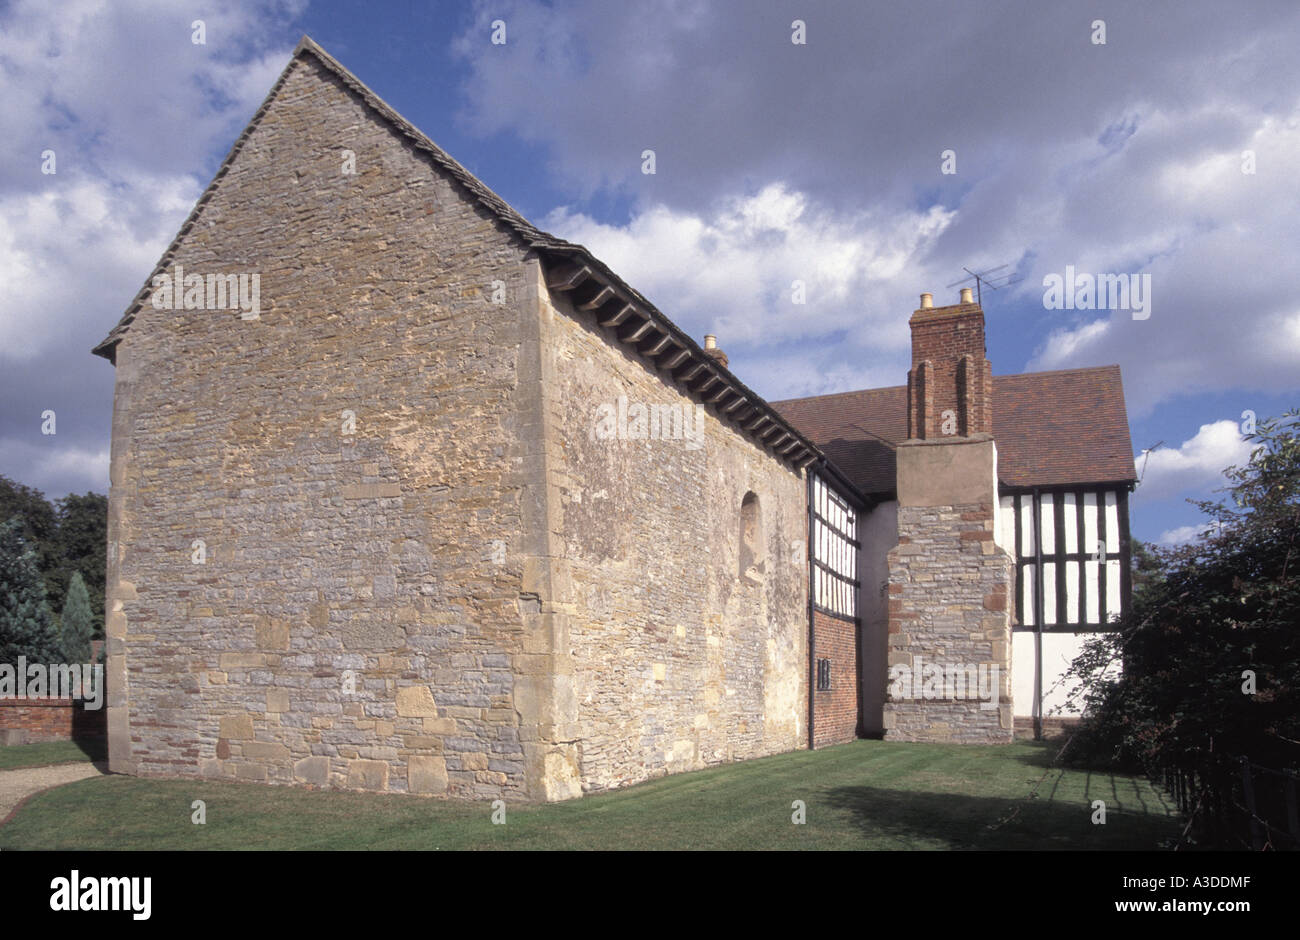 Deerhurst Oddas Kapelle ein seltenes historisches angelsächsisches Kapellgebäude, das an ein schwarz-weißes Bauernhaus Gloucestershire England angeschlossen ist Stockfoto